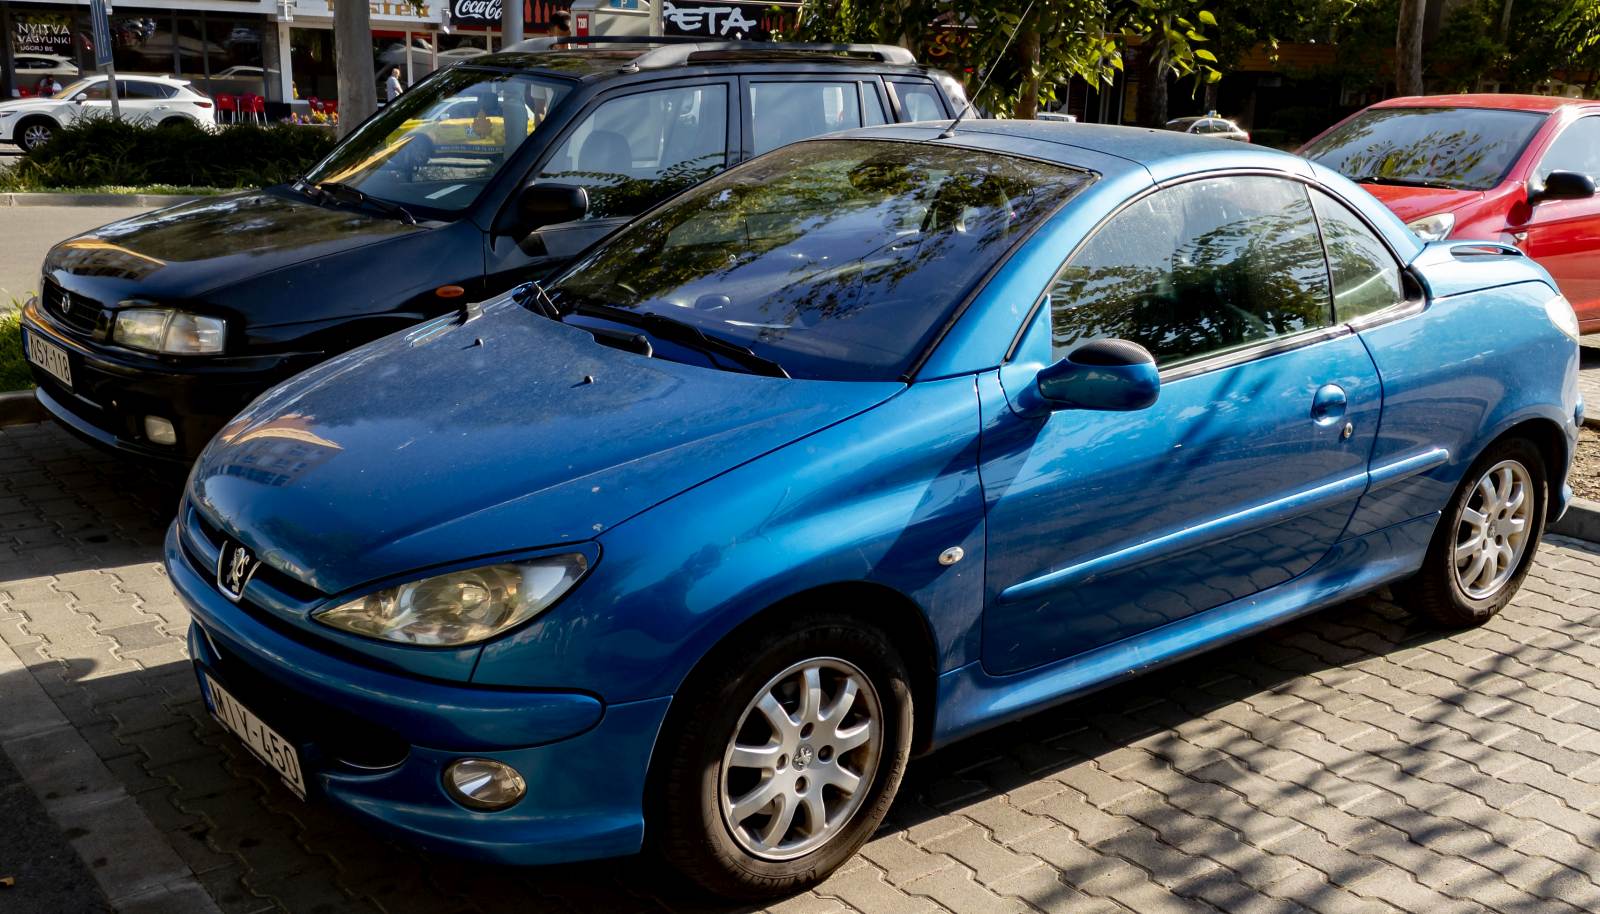 Peugeot 206 CC in der Farbe Bleu Recife, gesehen in Juli, 2022.